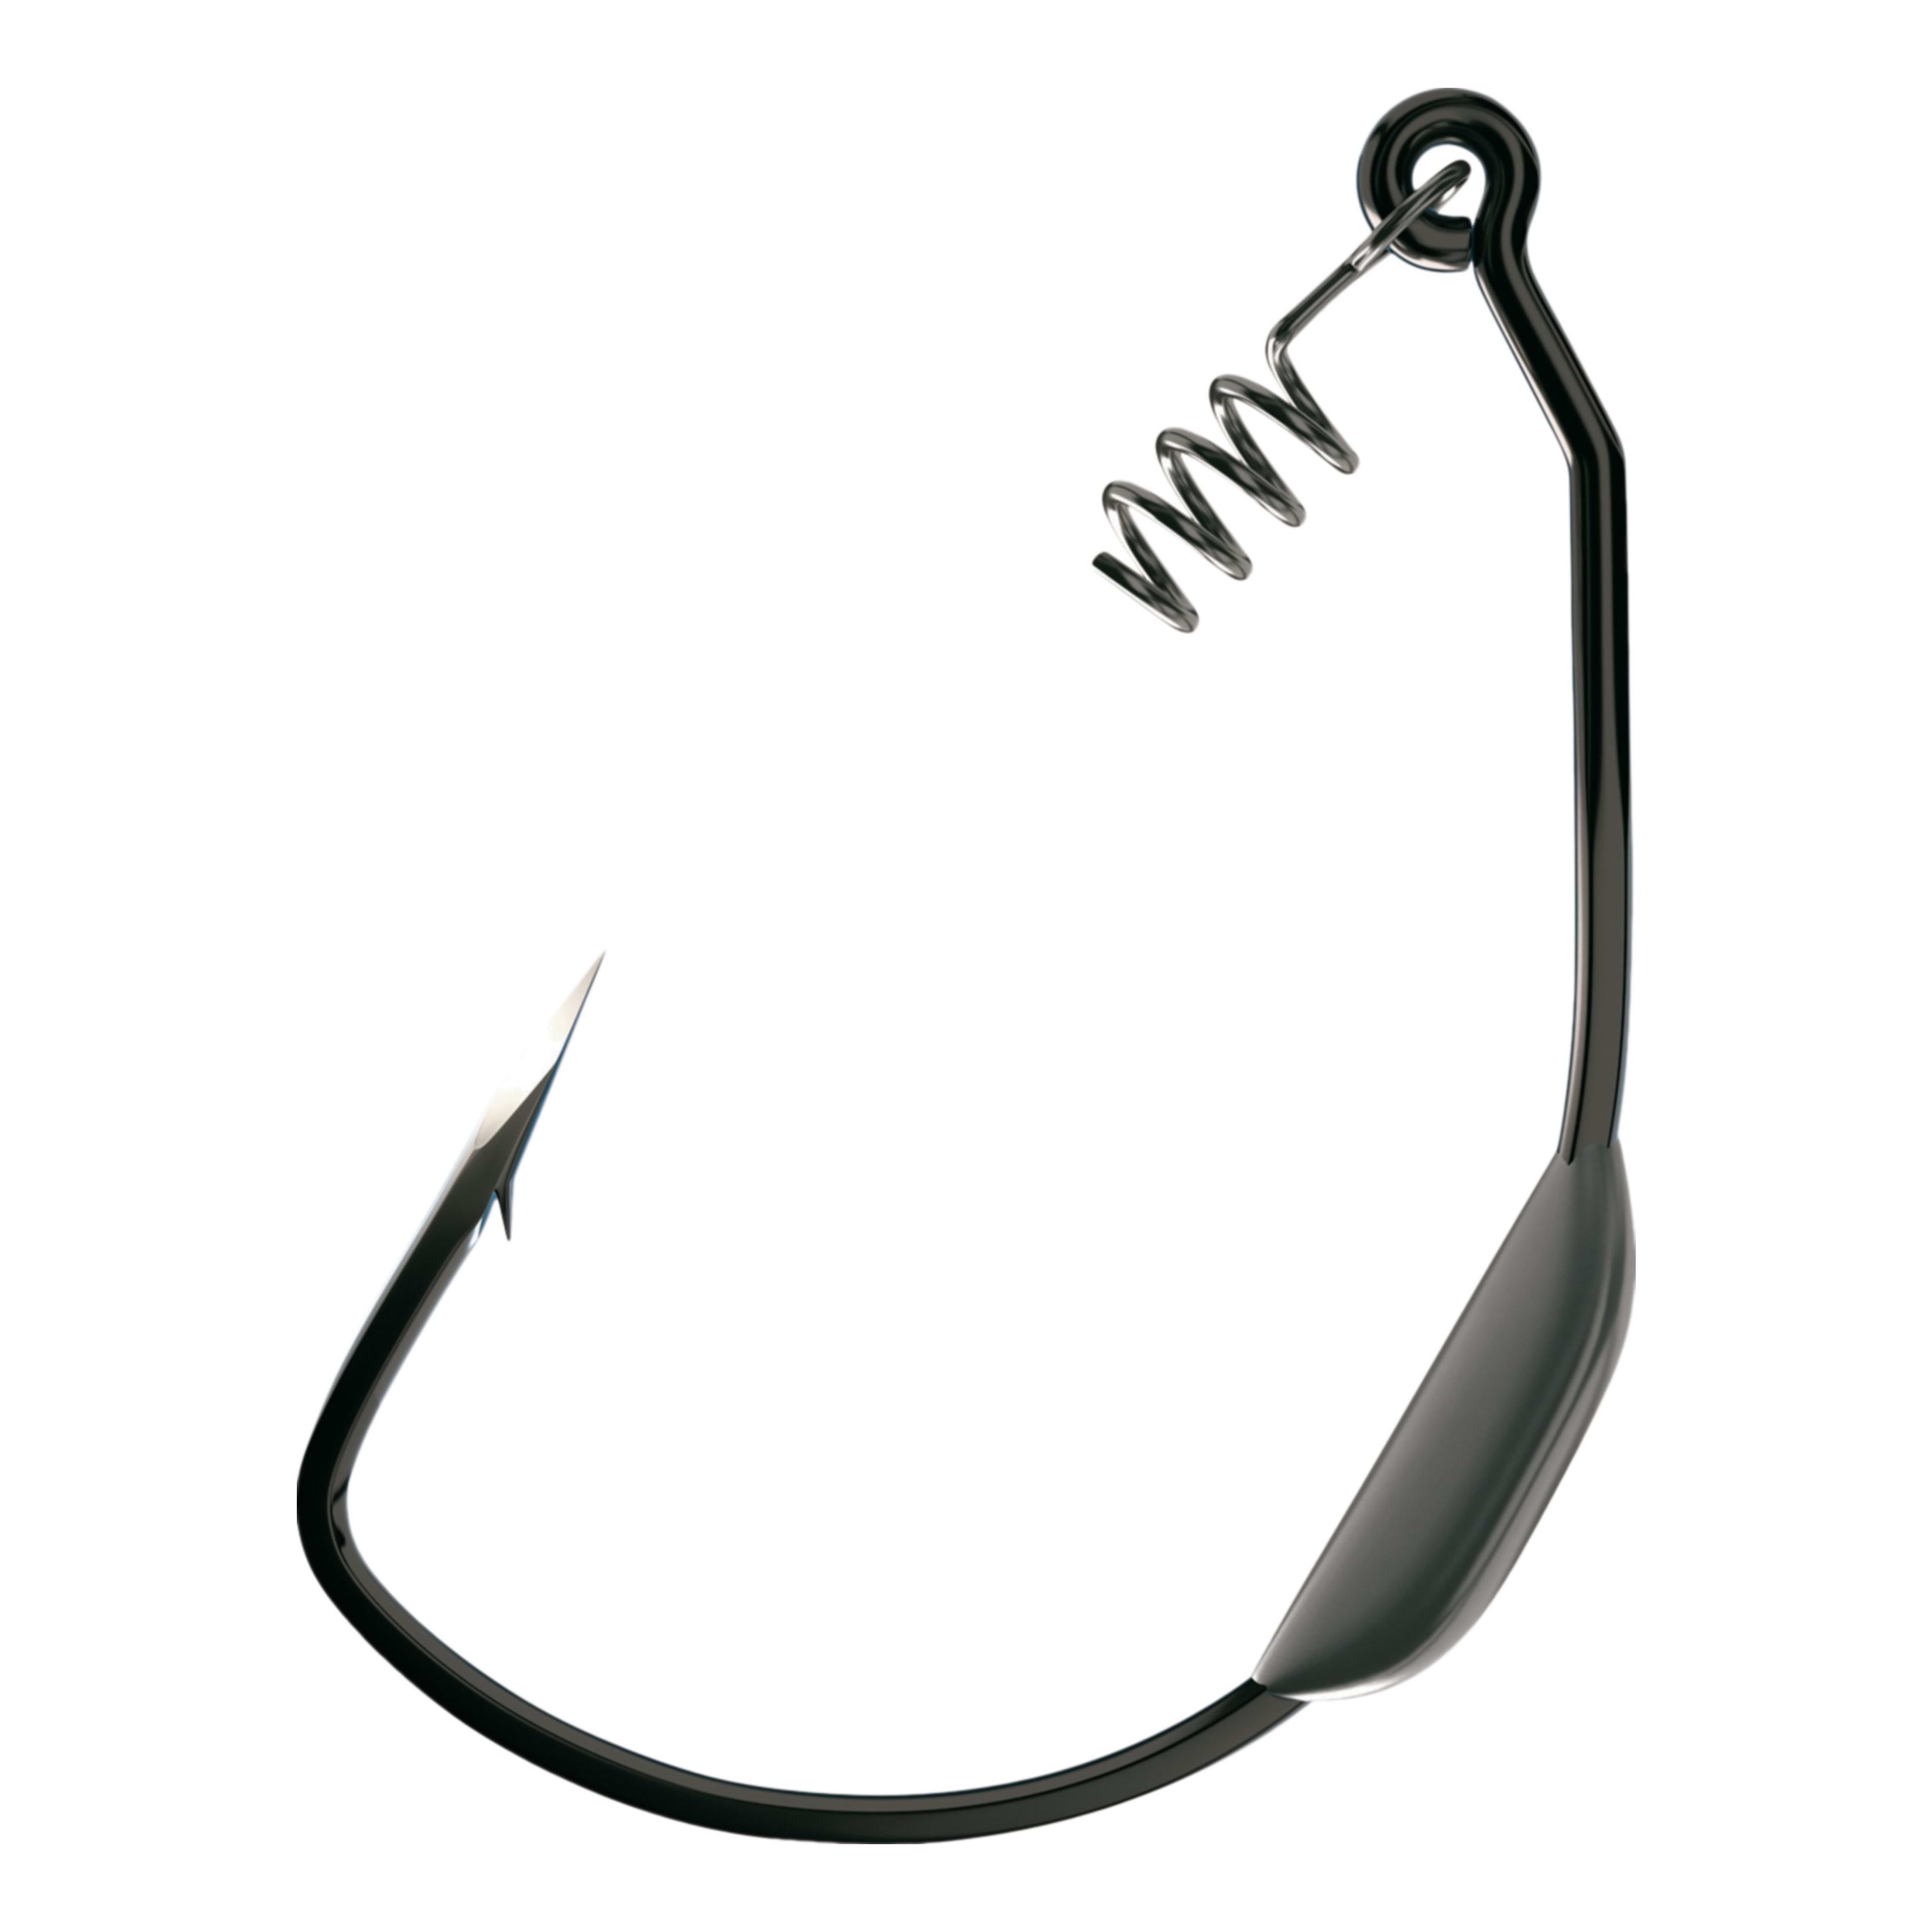 Cabela's® 61-Piece Wide-Gap Worm Hook Assortment